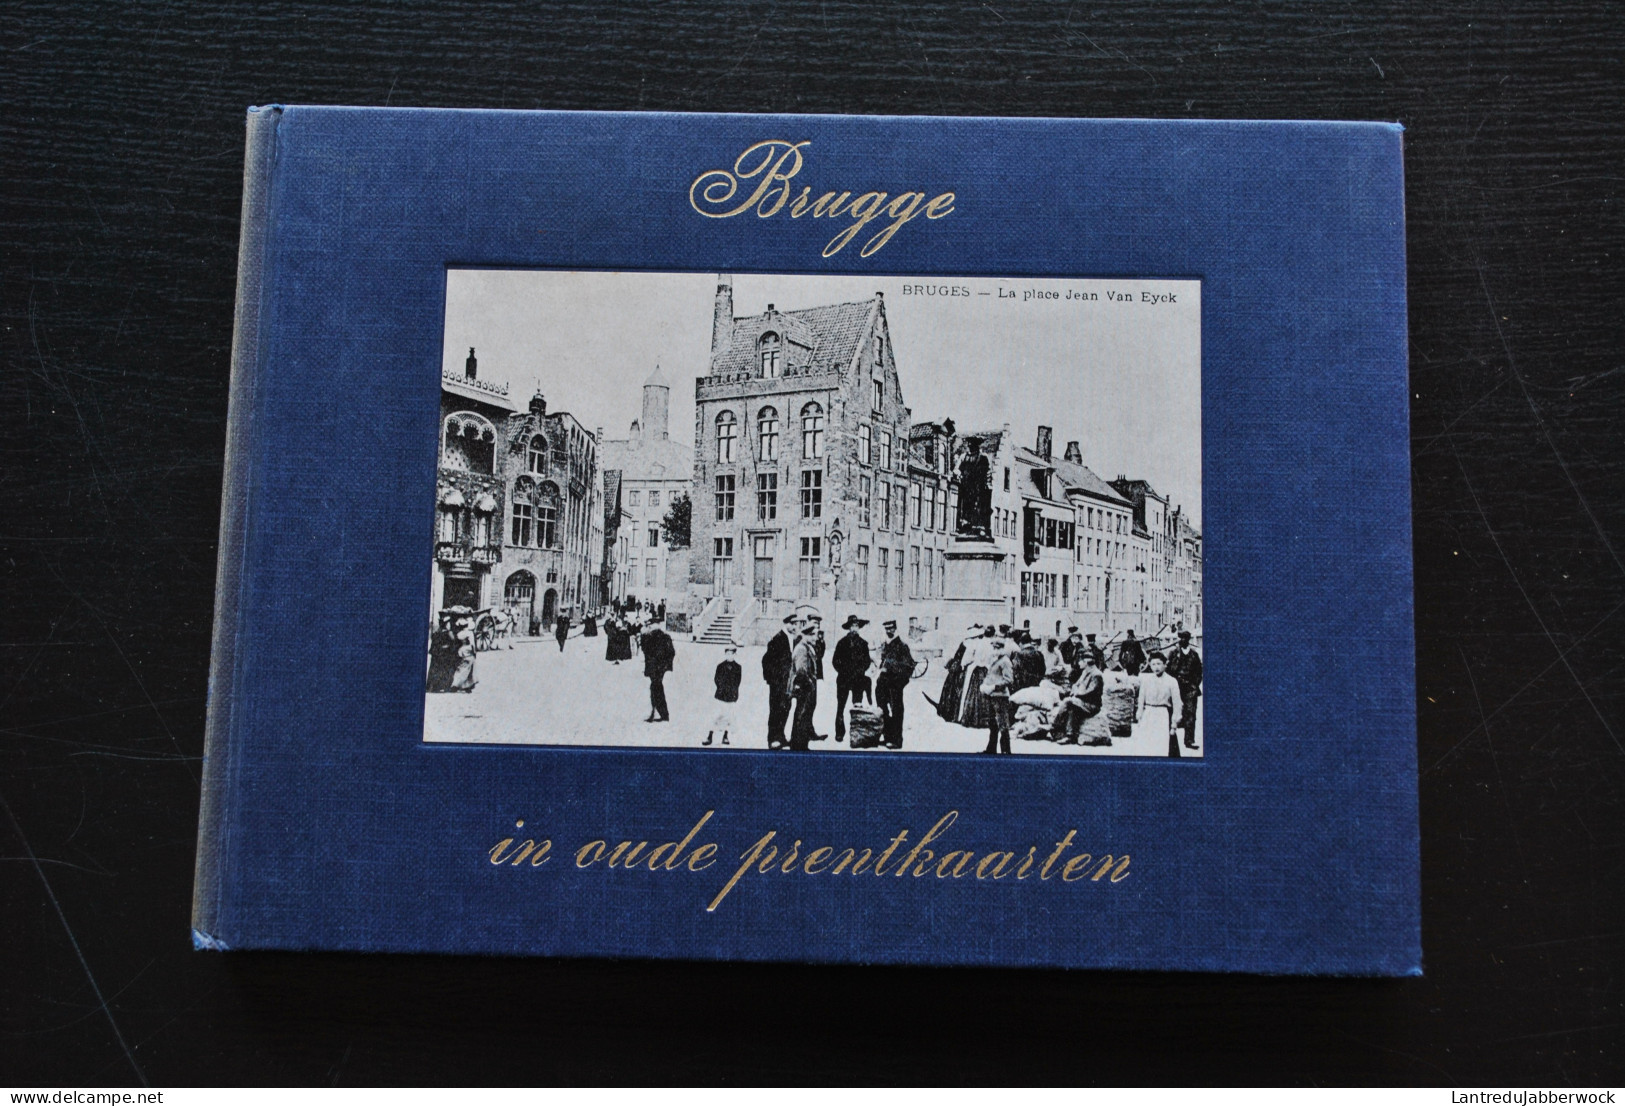 BRUGGE In Oude Prentkaarten Régionalisme Kruispoort Dampoort Van Eyckplein 14 18 Oorlog Bruges Cartes Postales Anciennes - Belgium